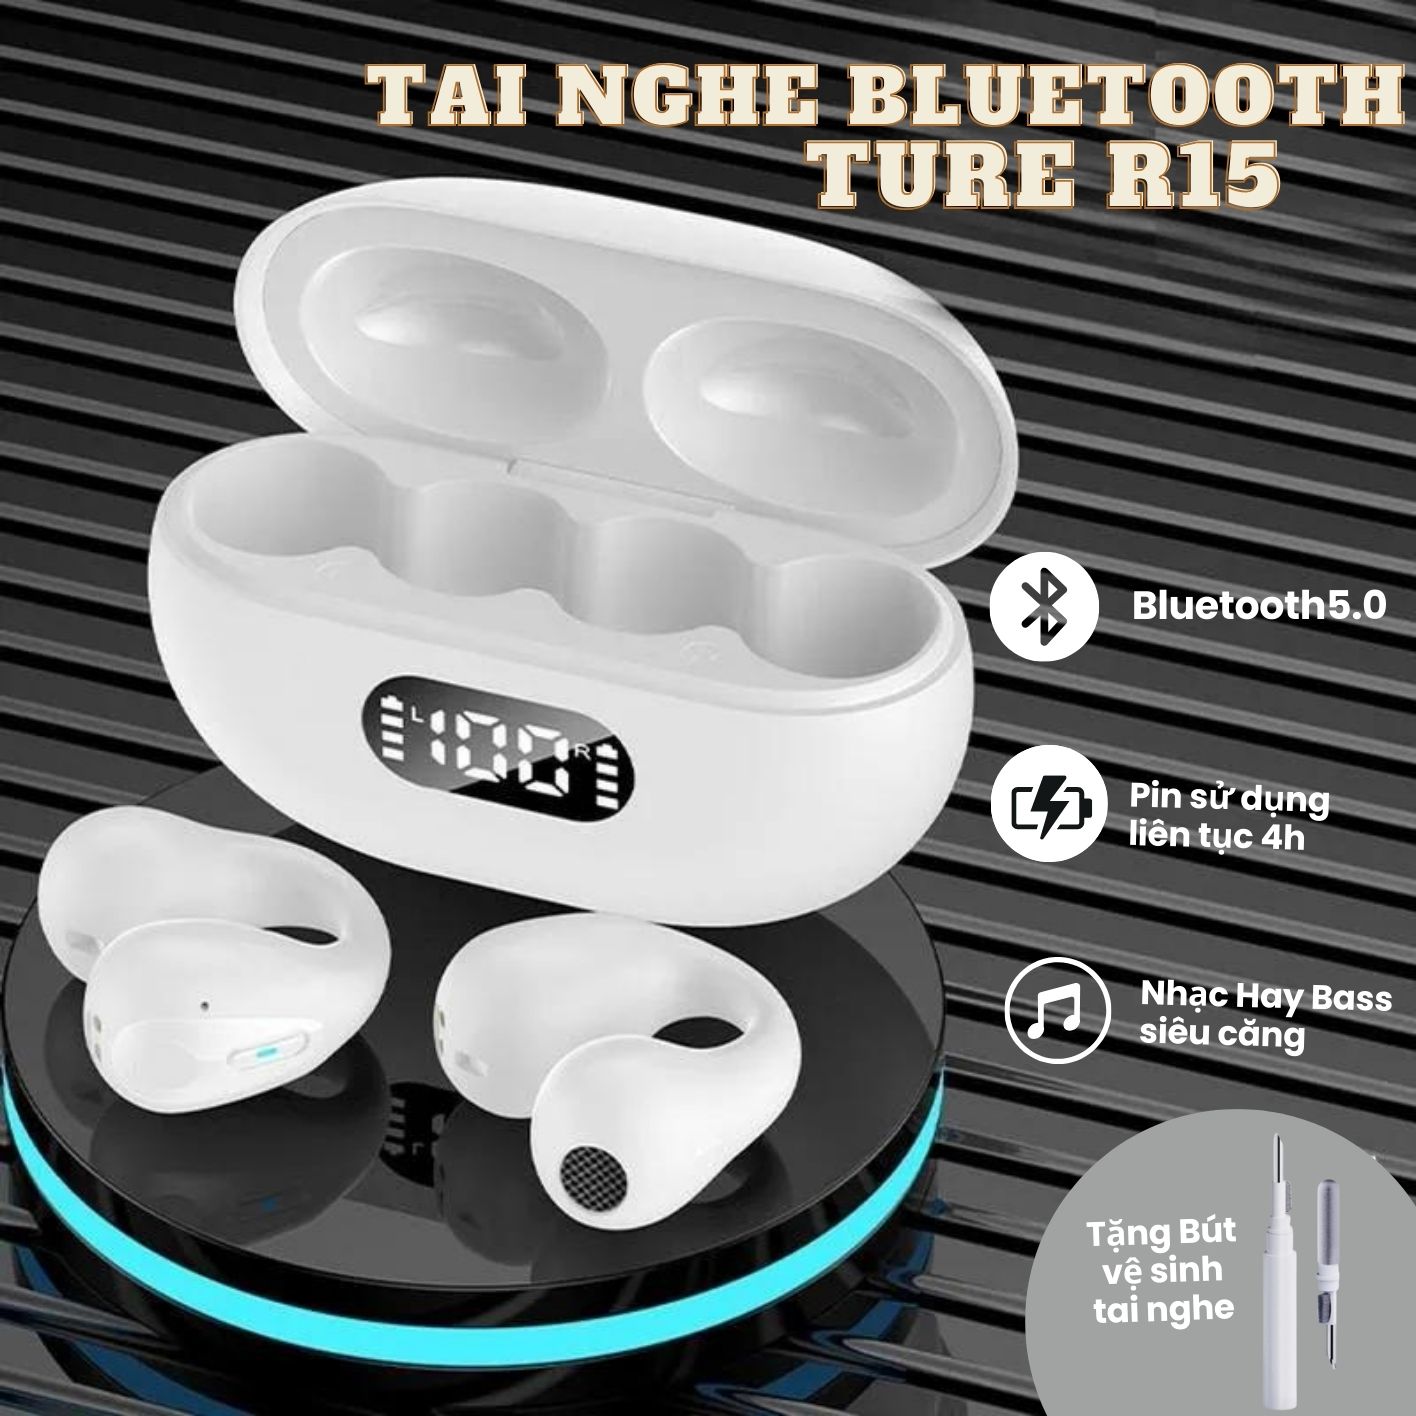 Tai Nghe Bluetooth TUNE R15 , Bluetooth 5.3 , Pin trâu, thiết kế đeo vành tai phong cách mới đeo lâu không đau, chơi game  nghe gọi không bị delay thích hợp mọi loại máy.